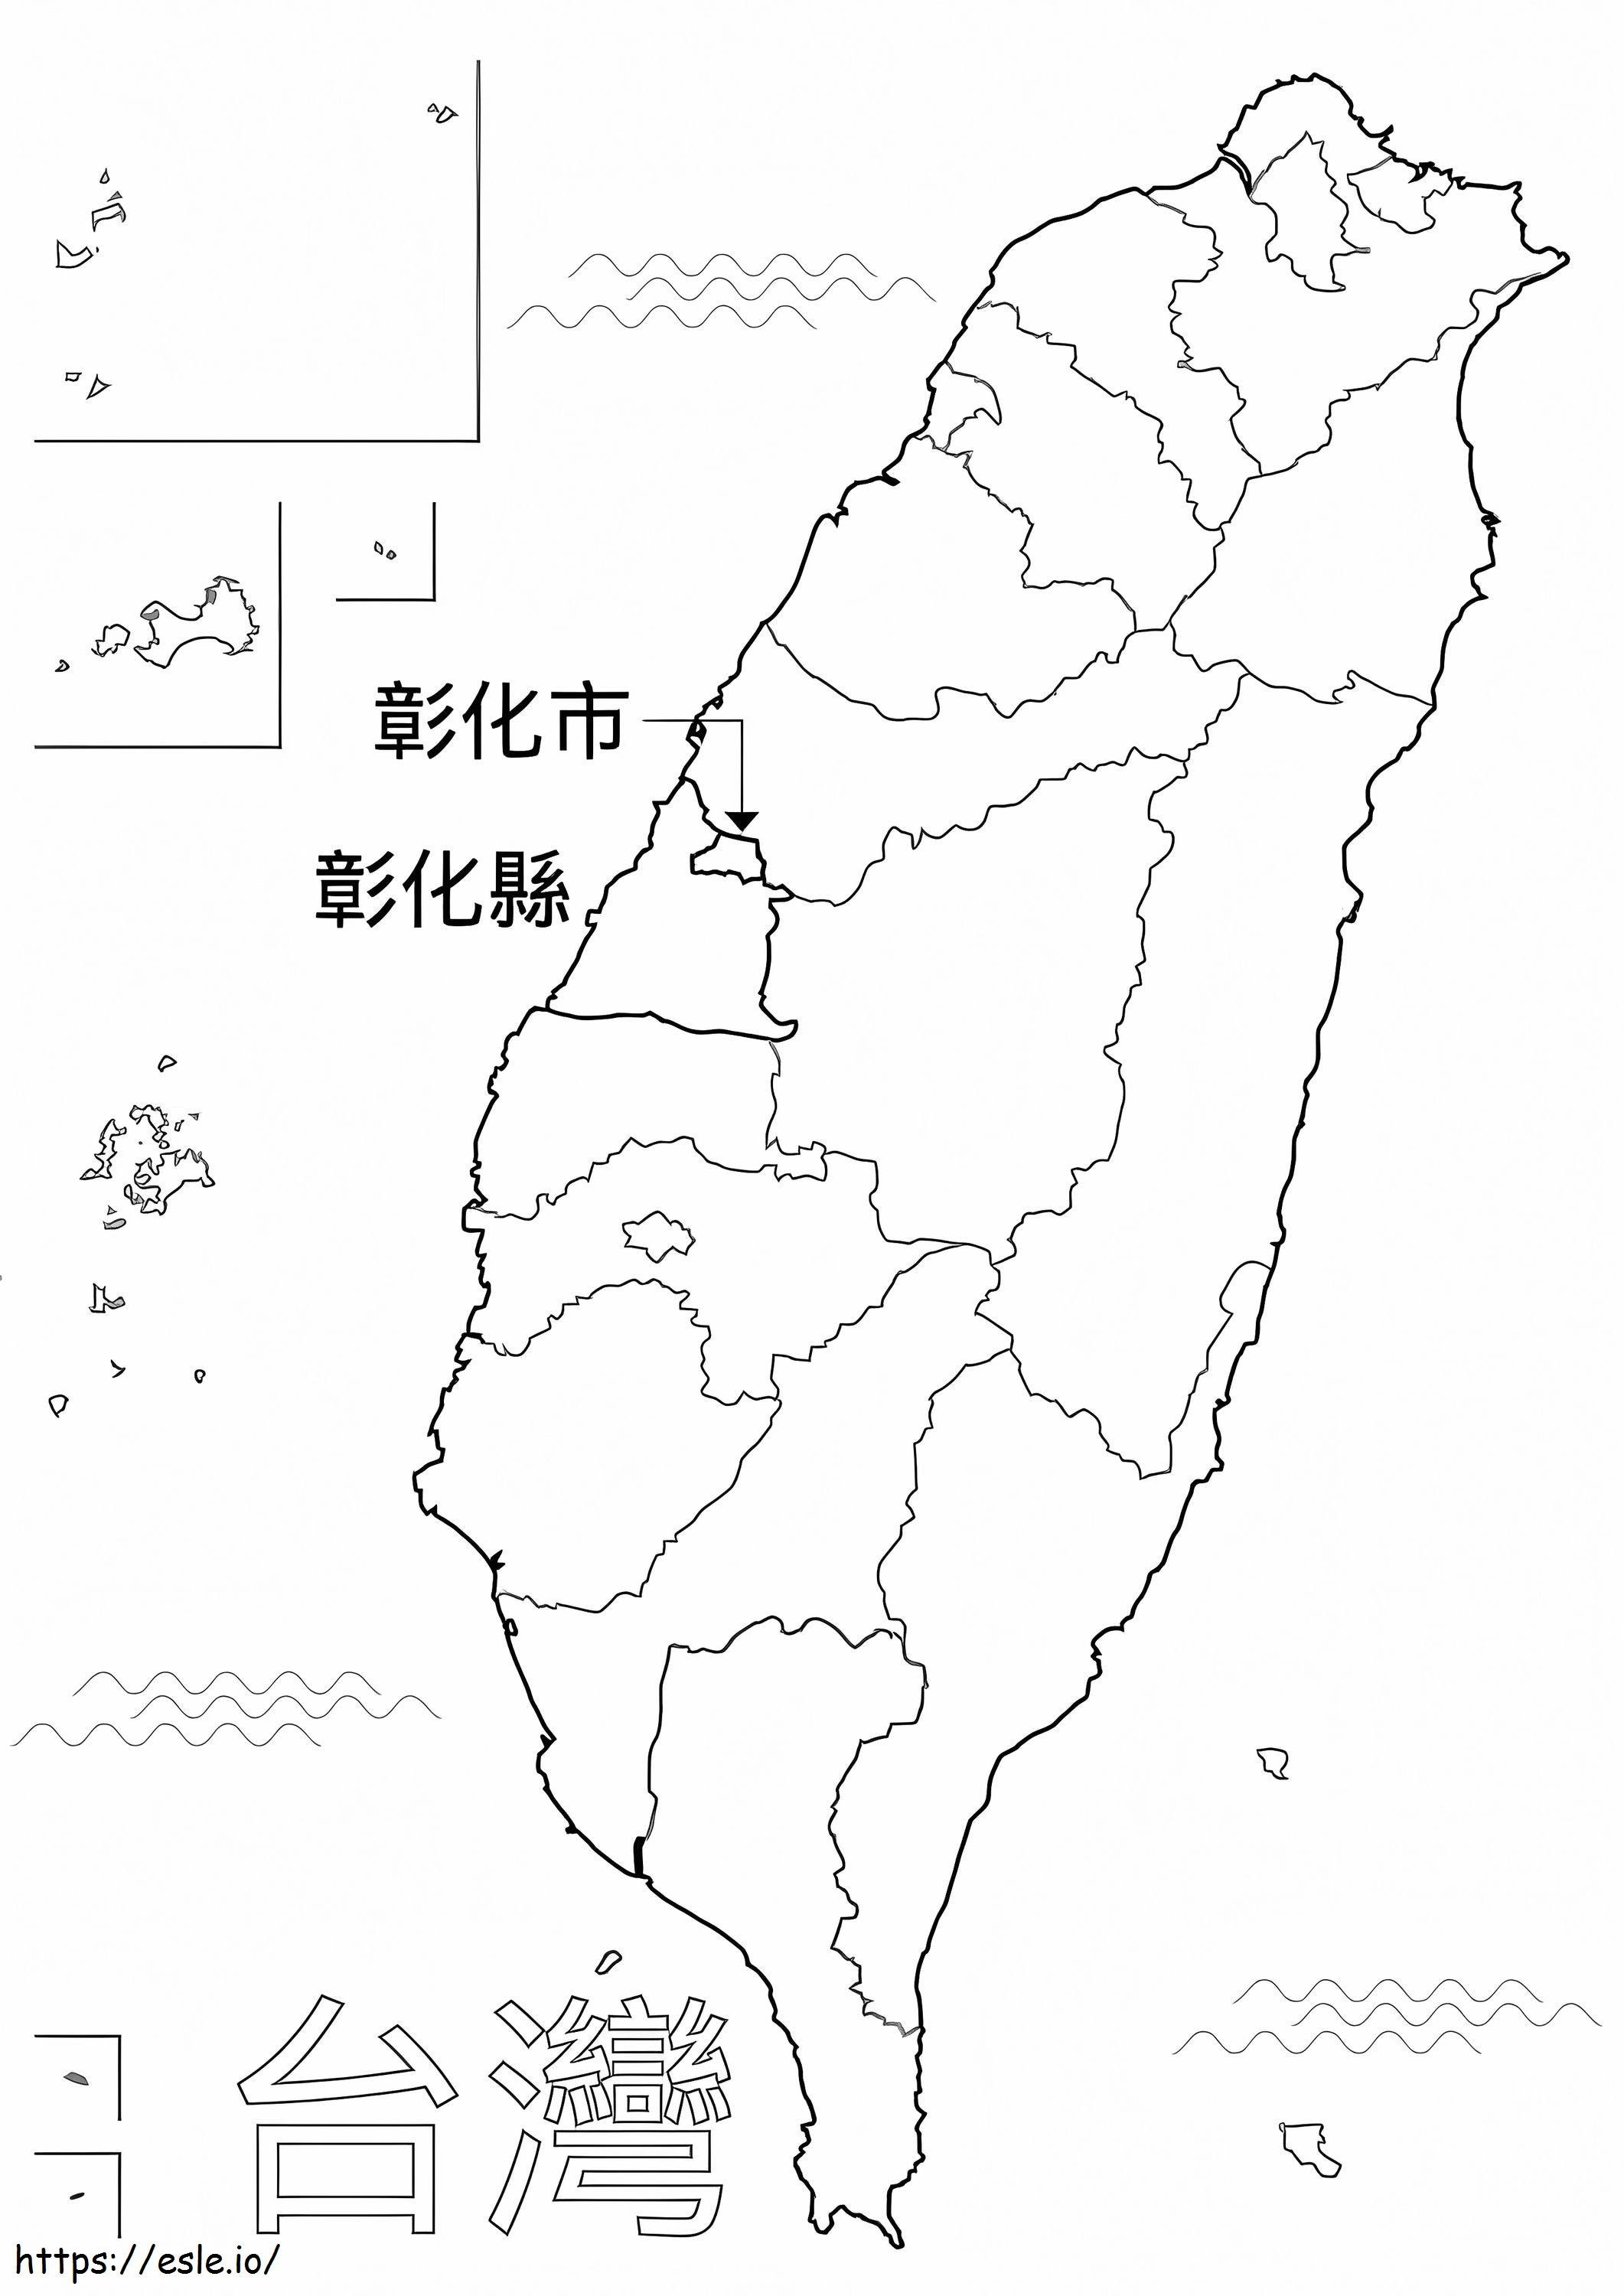 Tayvan Haritası boyama